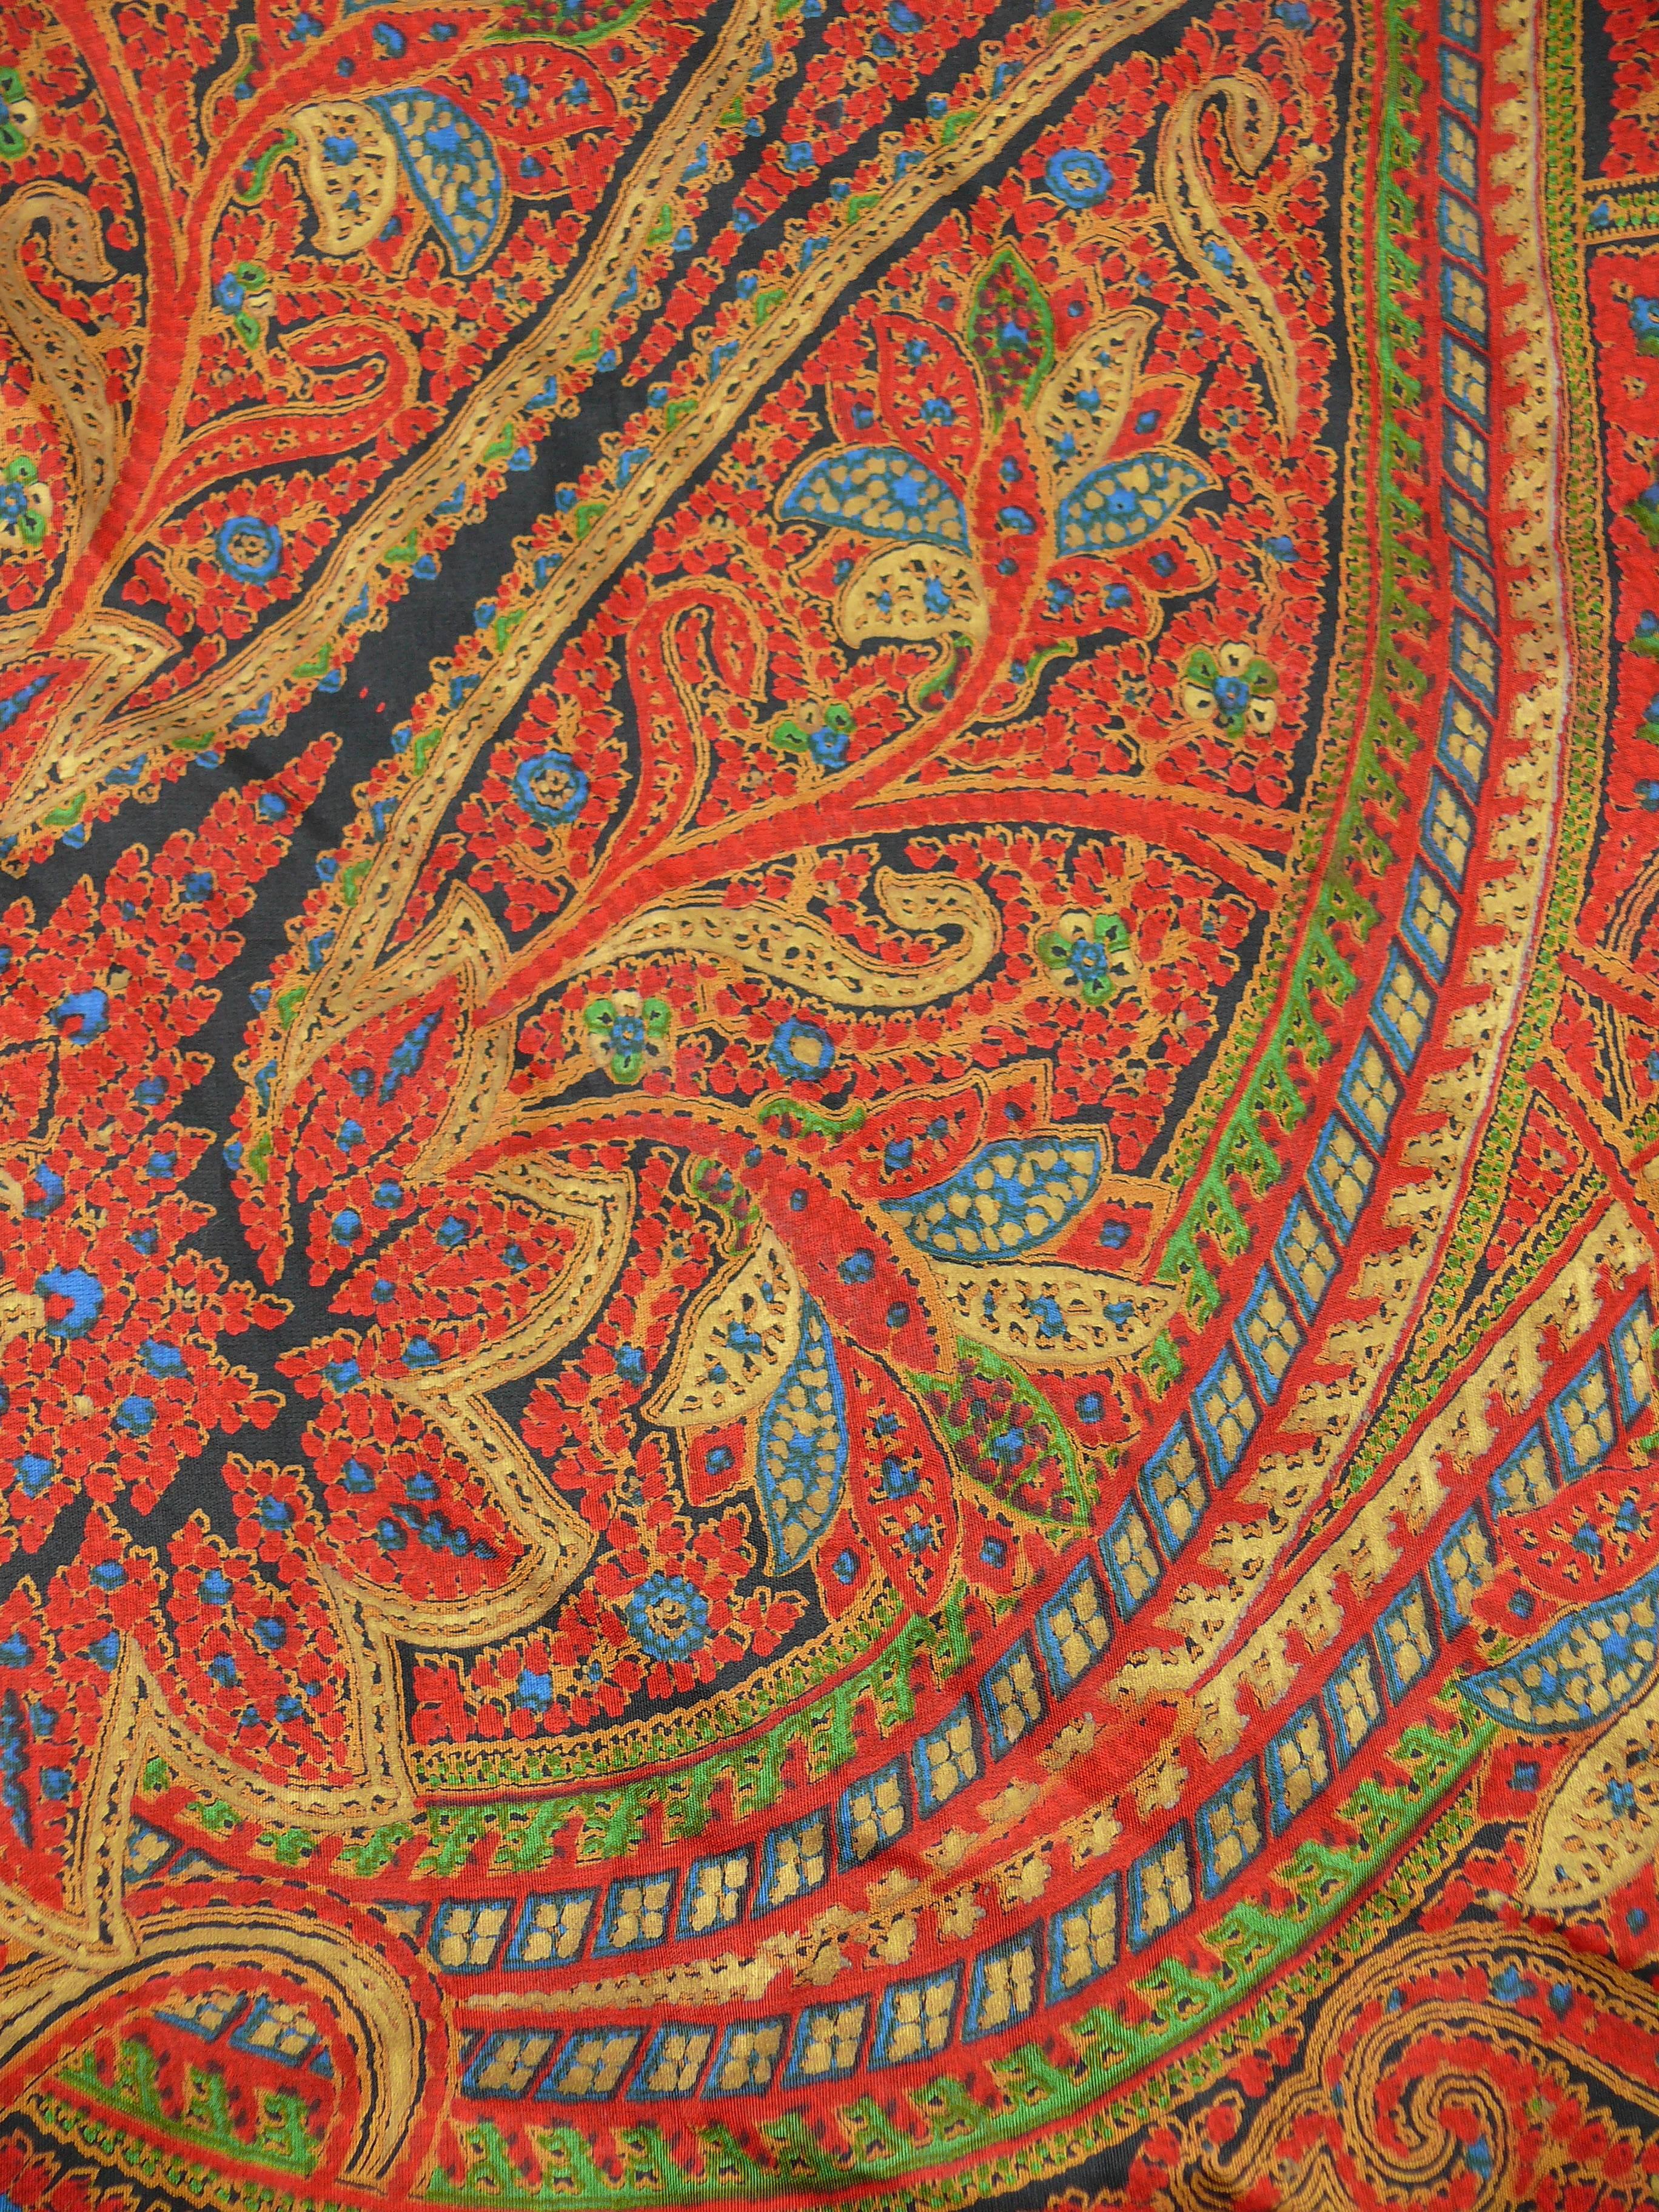 YVES SAINT LAURENT wunderschöner Vintage-Schal mit Fransen und einem opulenten, orientalisch inspirierten Design in den Farben Rot, Blau, Grün, Safran, Schwarz und Gold.

Lange schwarze Fransen rundherum.

Bedruckte YSL.

Zusammensetzungs- und